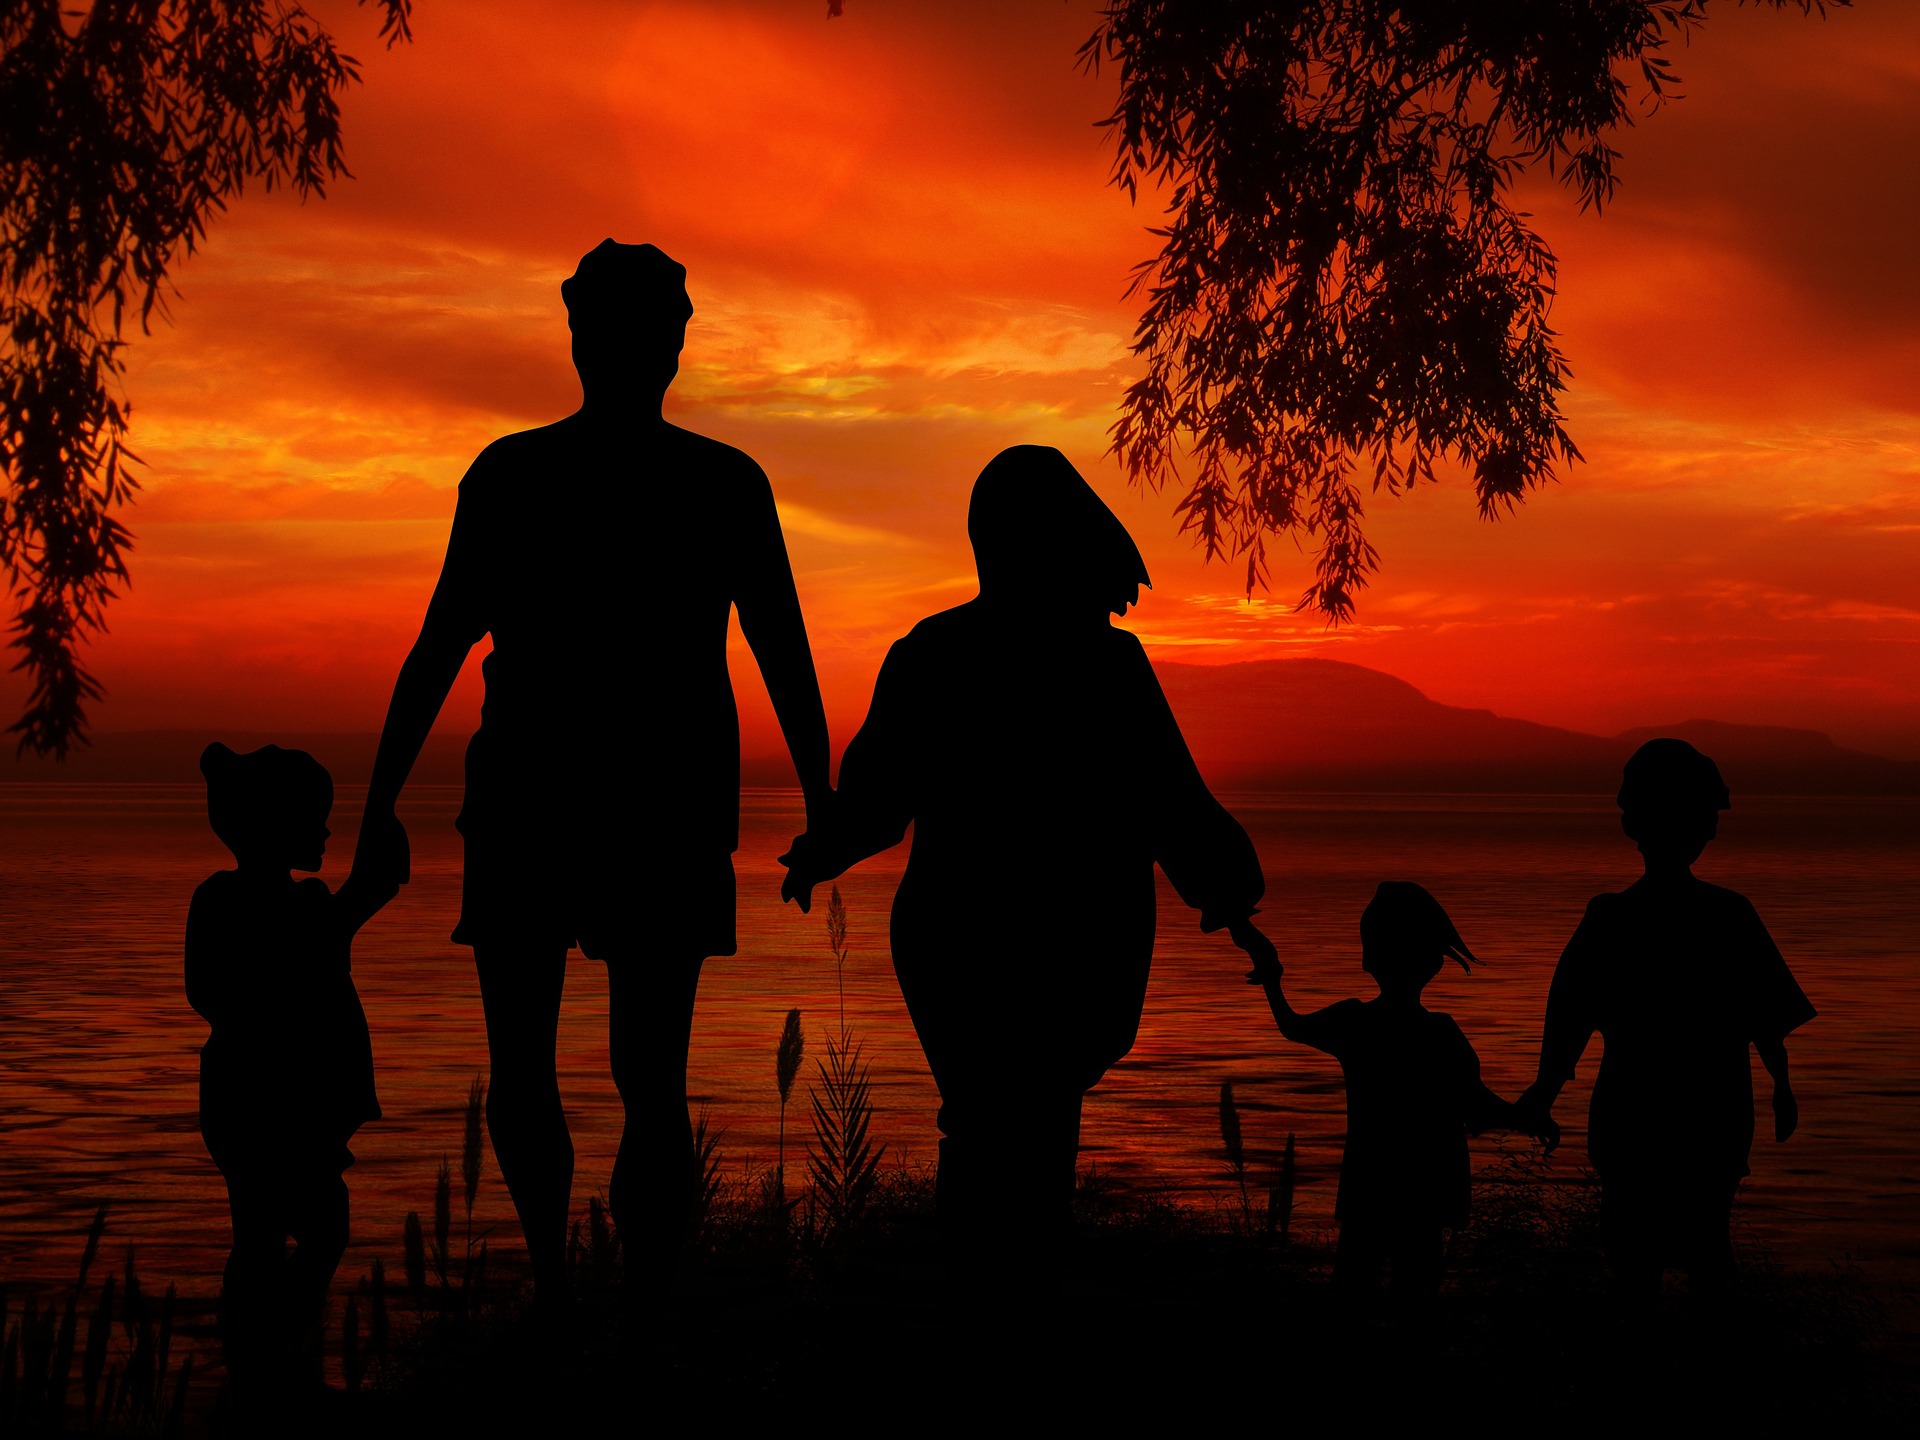 Pięciosobowa rodzina trzymająca się za ręce na tle czerwonego nieba od zachodzącego słońca